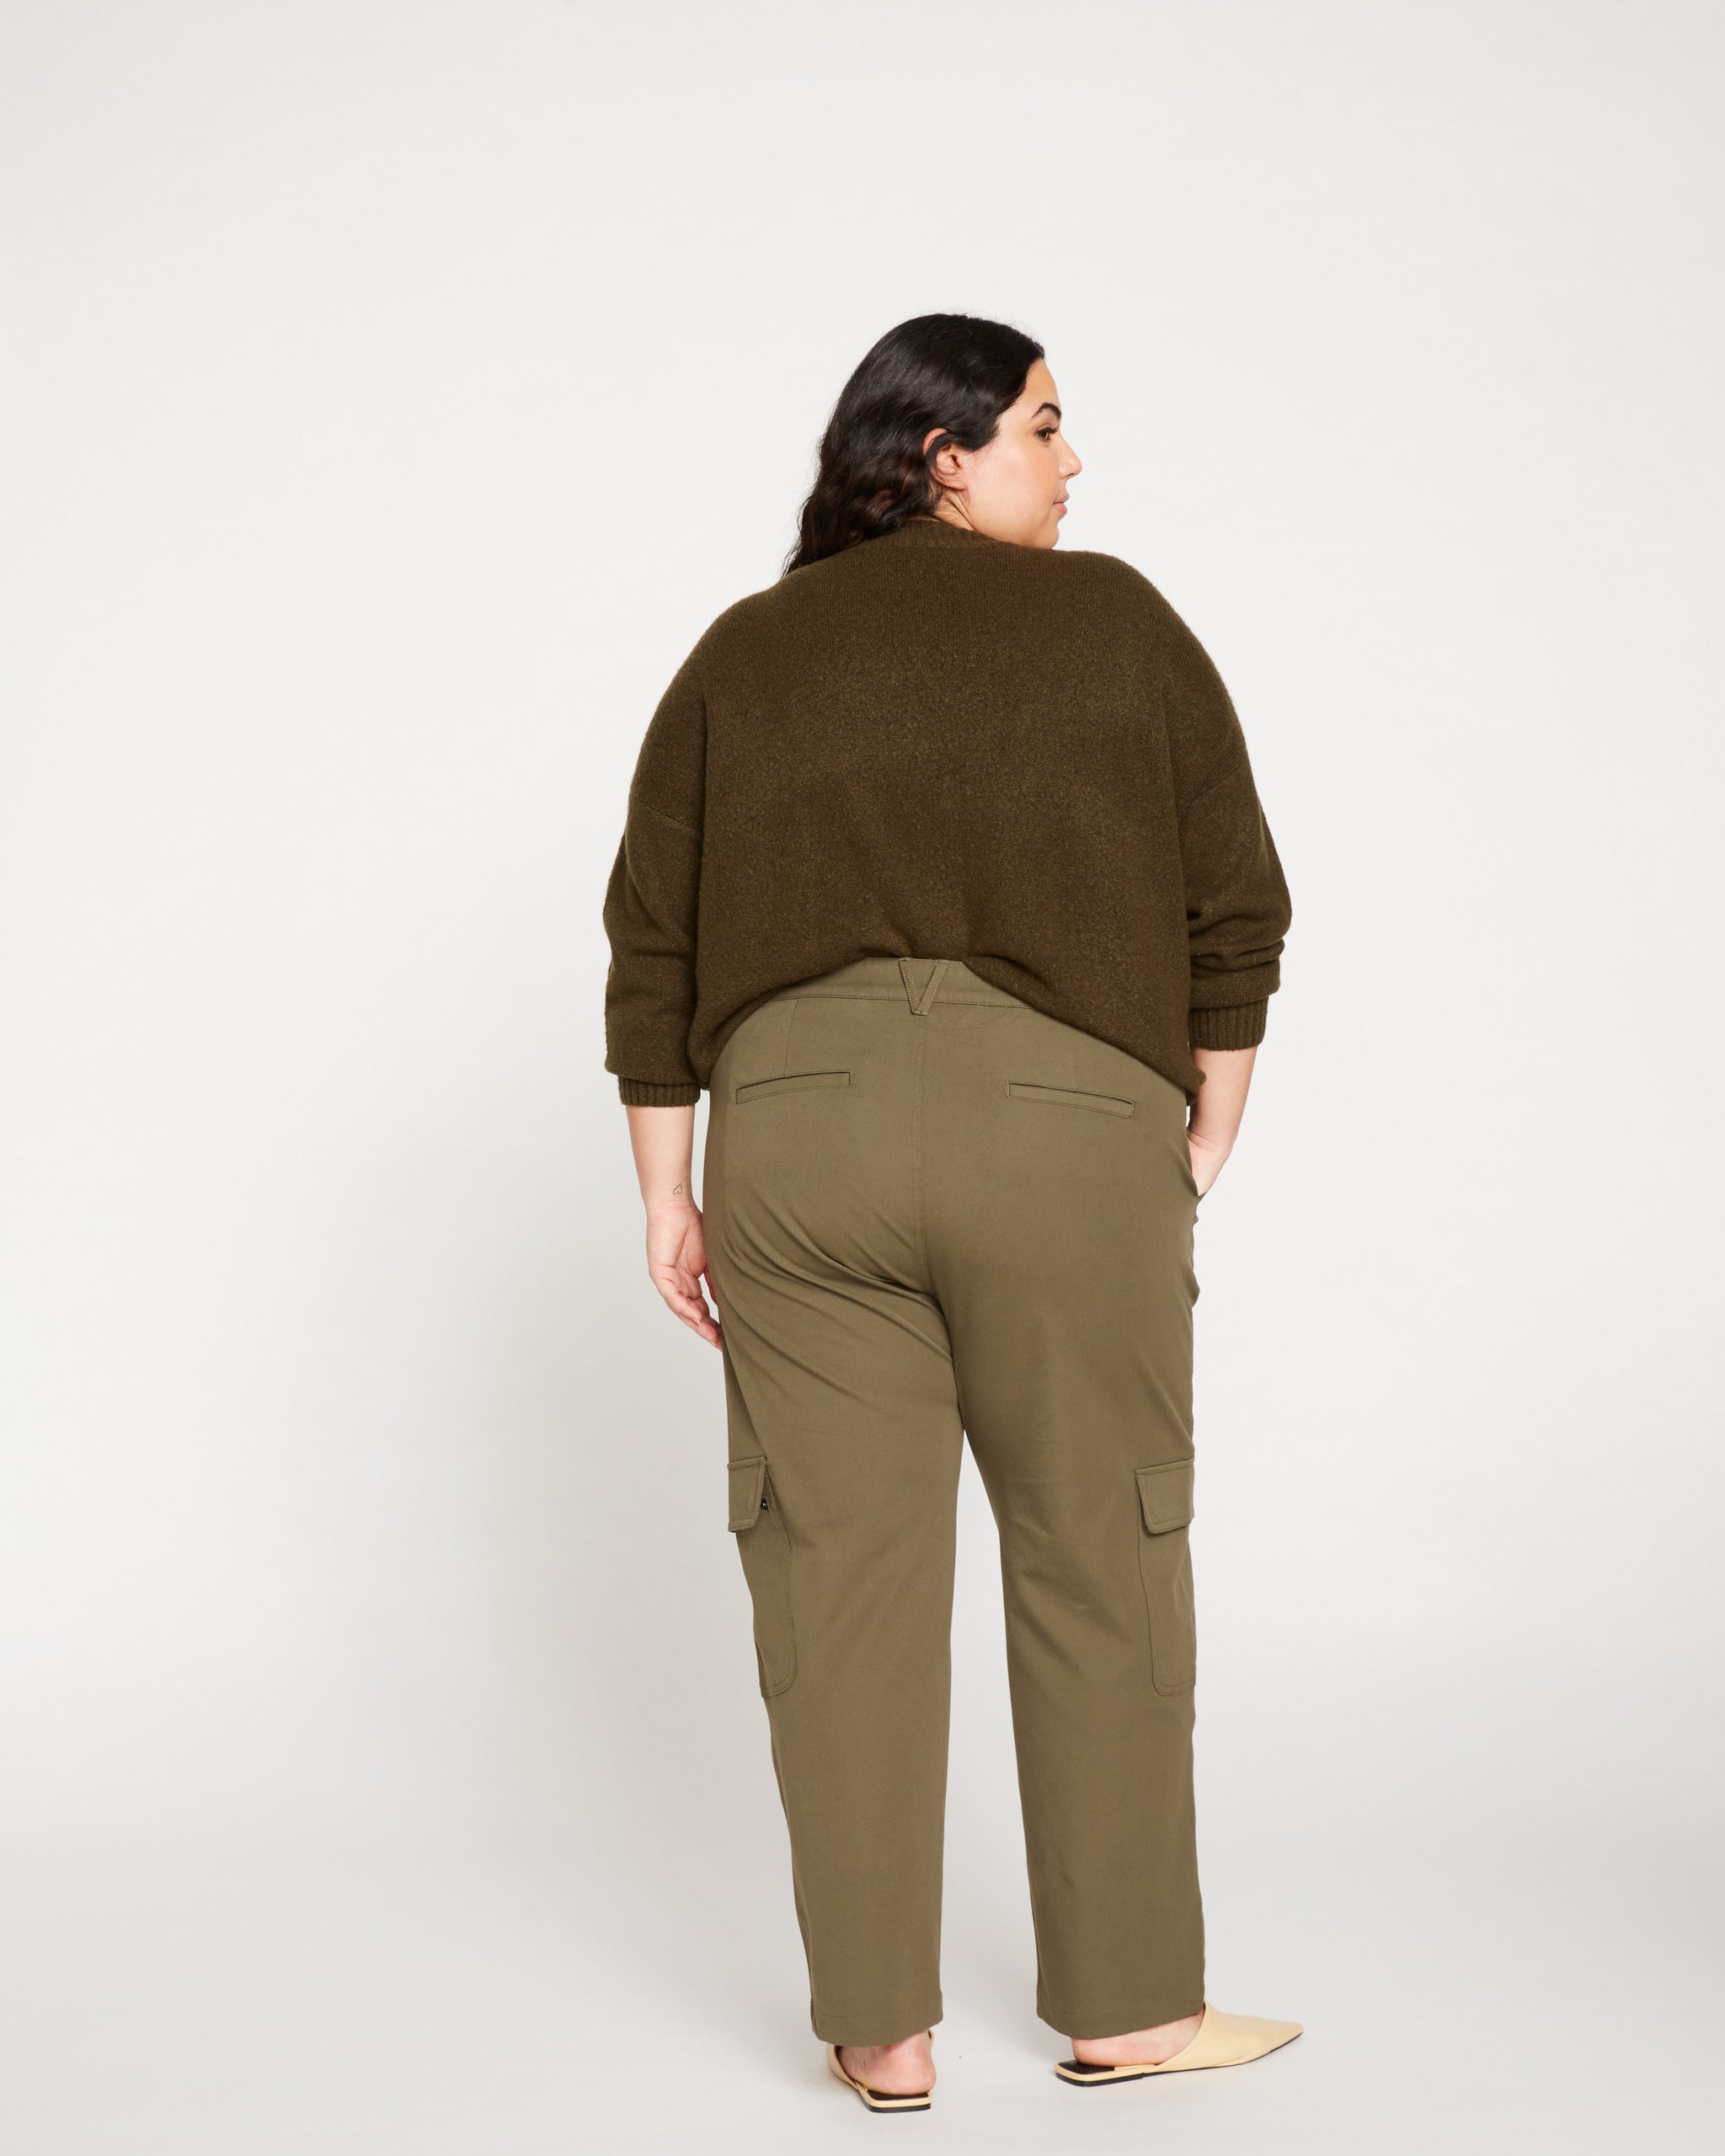 Dark Khaki Green Cargo Pants H&M Woman's Size 2